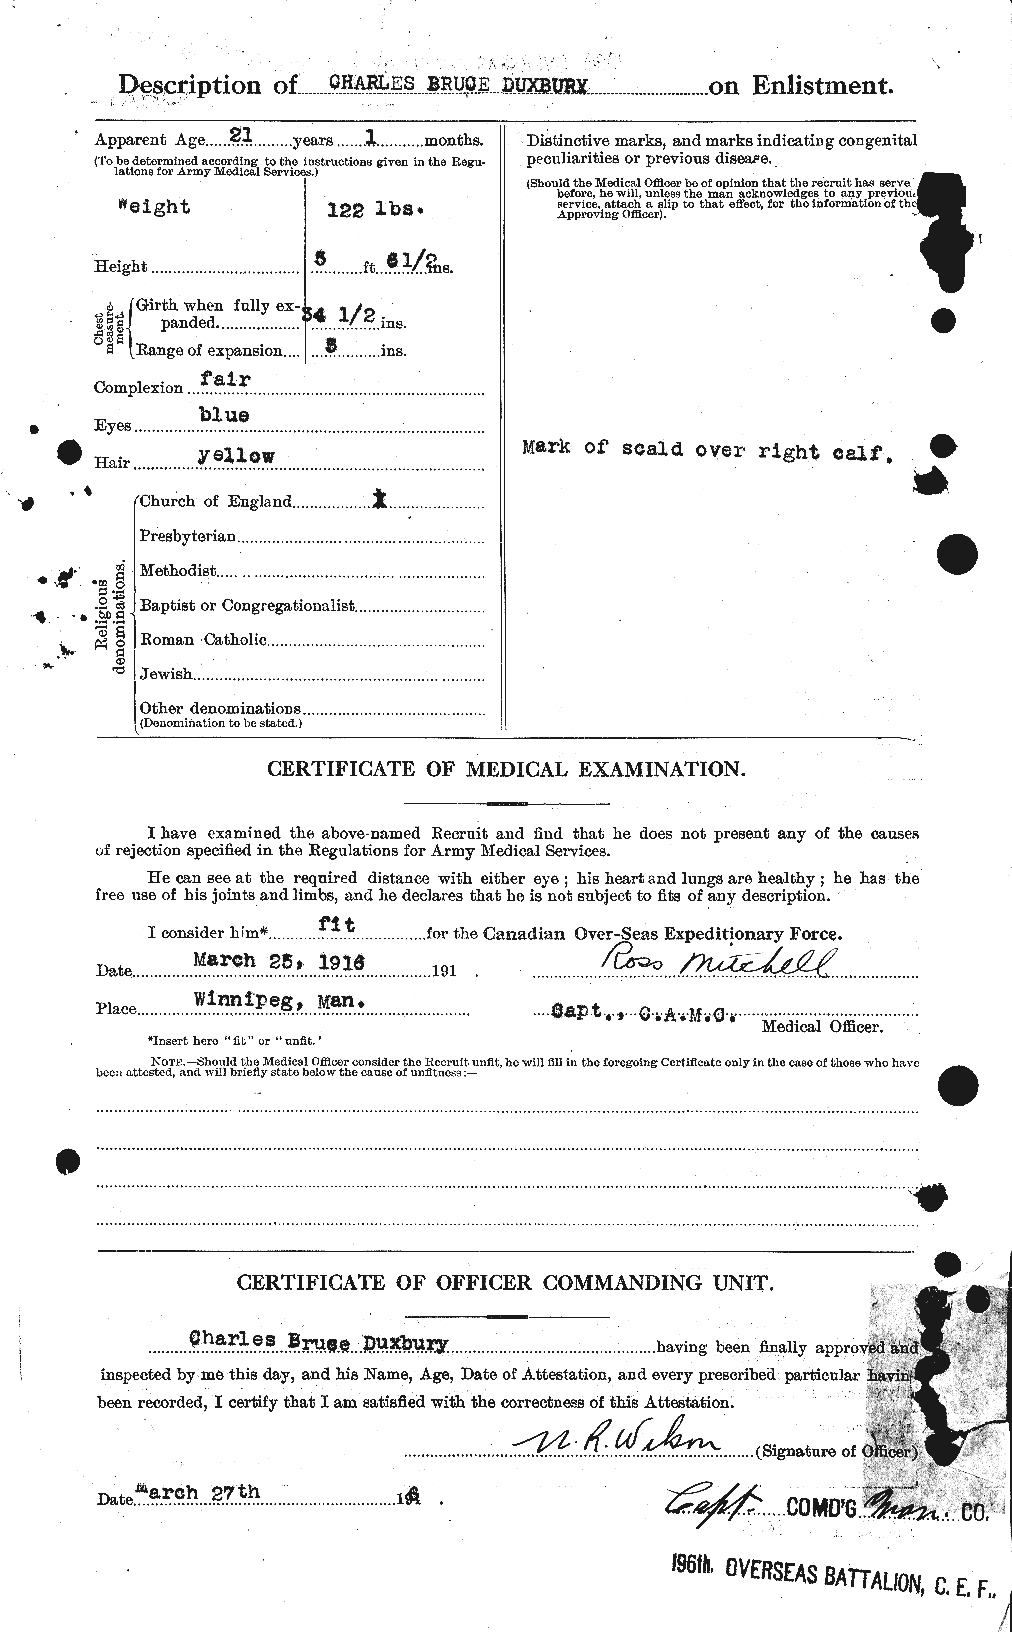 Dossiers du Personnel de la Première Guerre mondiale - CEC 305547b